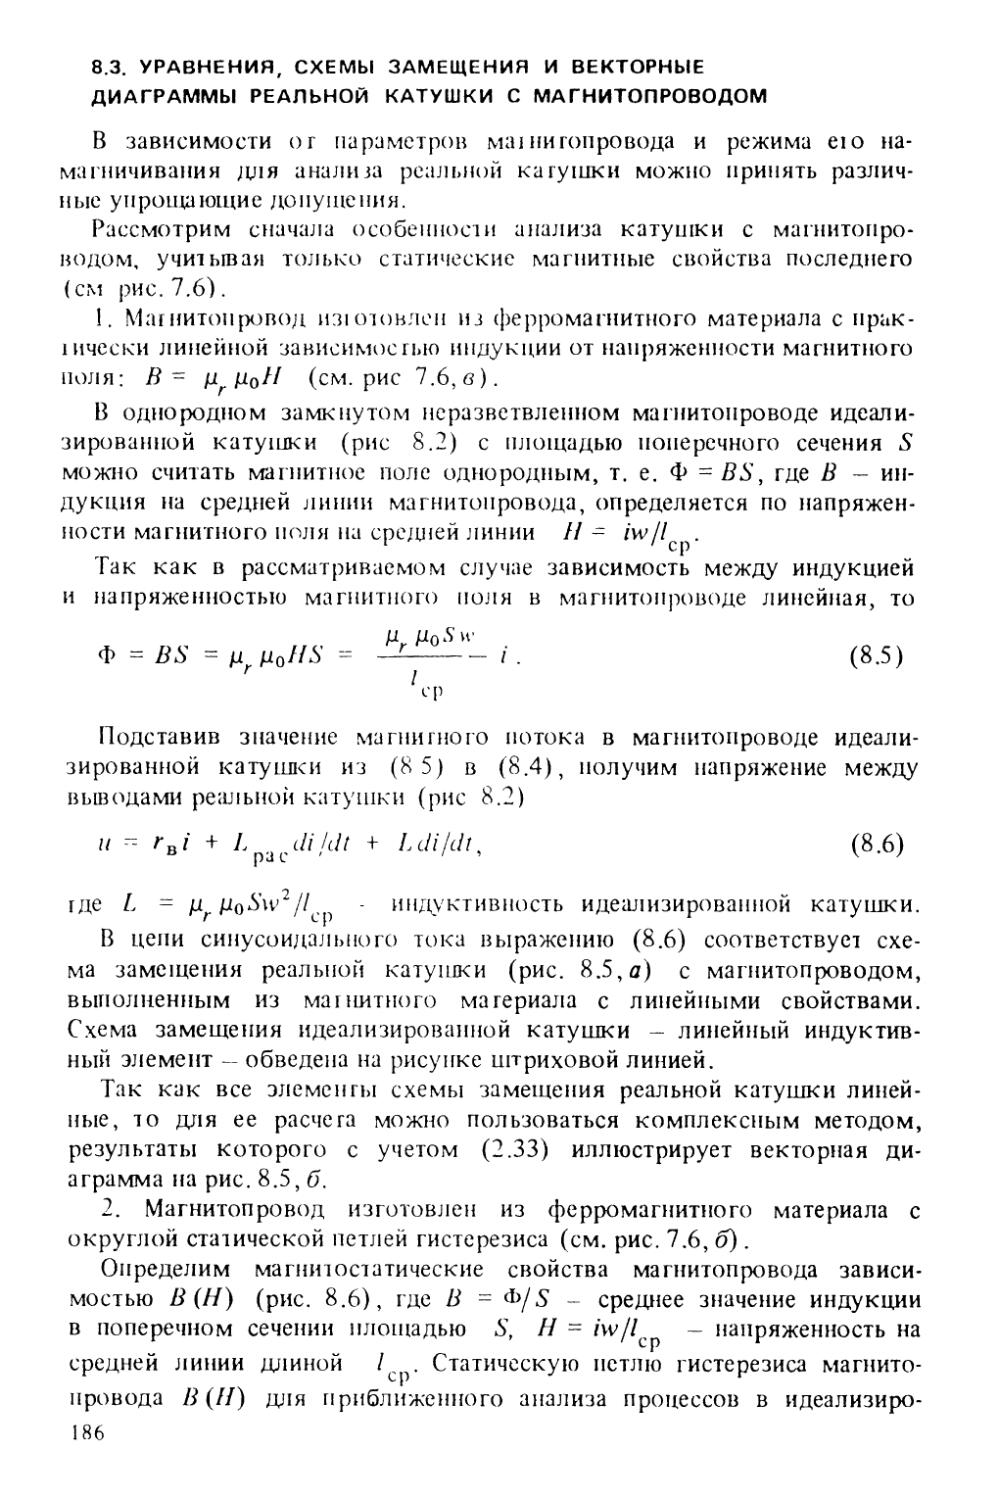 8.3. Уравнения, схемы замещения и векторные диаграммы реальной катушки с магнитопроводом